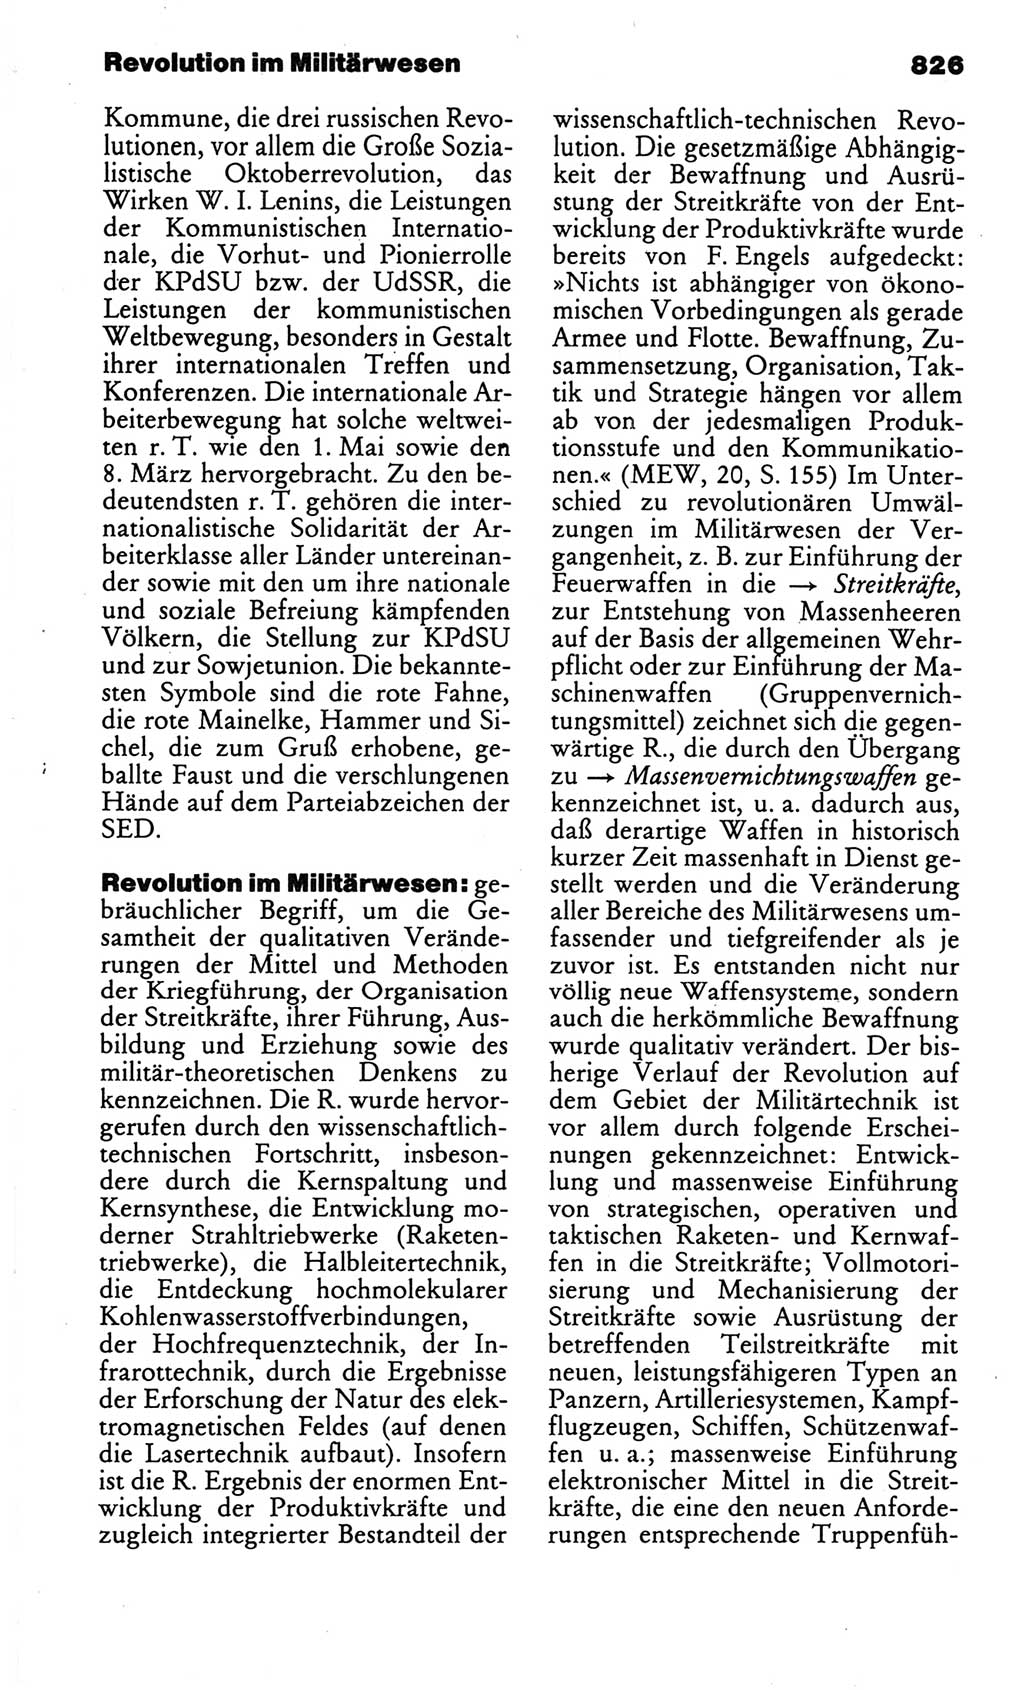 Kleines politisches Wörterbuch [Deutsche Demokratische Republik (DDR)] 1986, Seite 826 (Kl. pol. Wb. DDR 1986, S. 826)